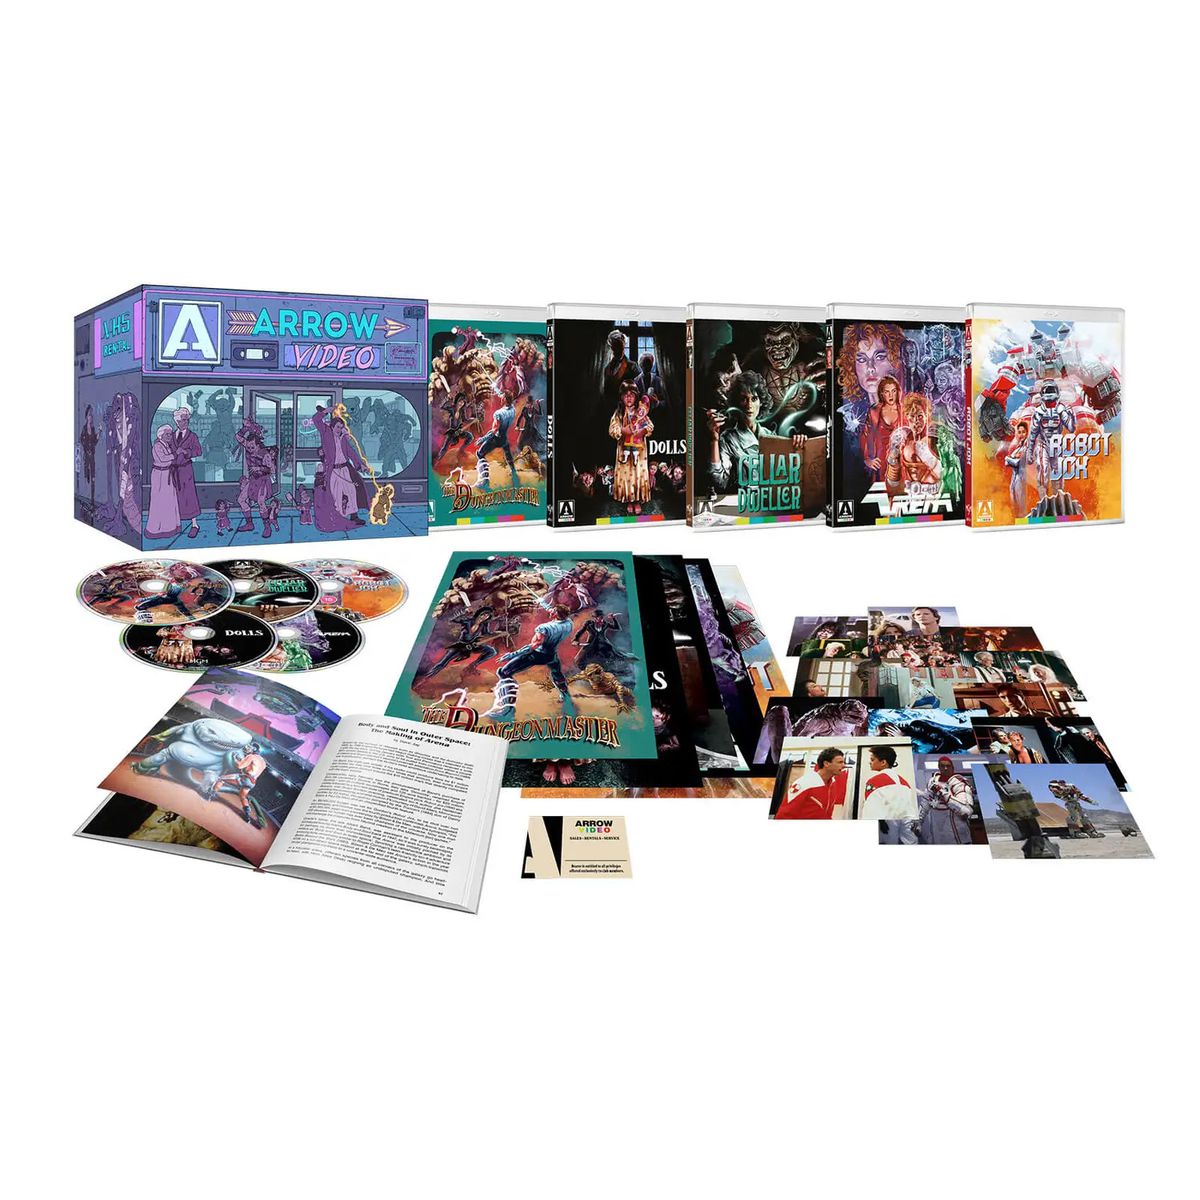 Blu-ray 디스크, 사진 및 책이 포함된 Enter the Video Store Blu-ray 박스 세트의 사진.